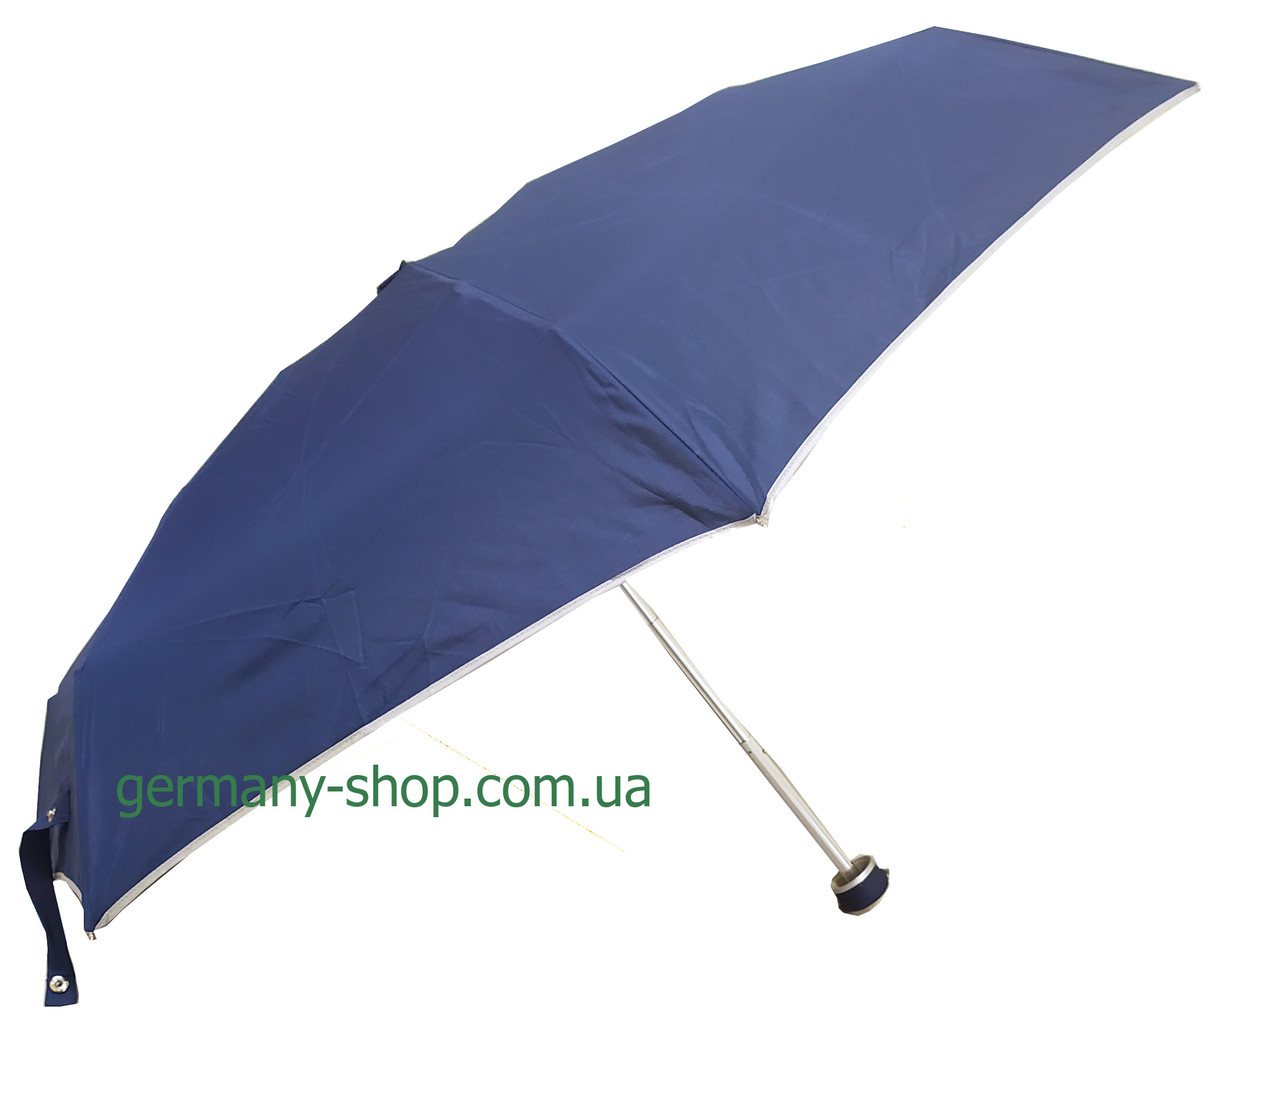 Нова ультра-компактна парасолька Tiross TS-1512 з Європи.